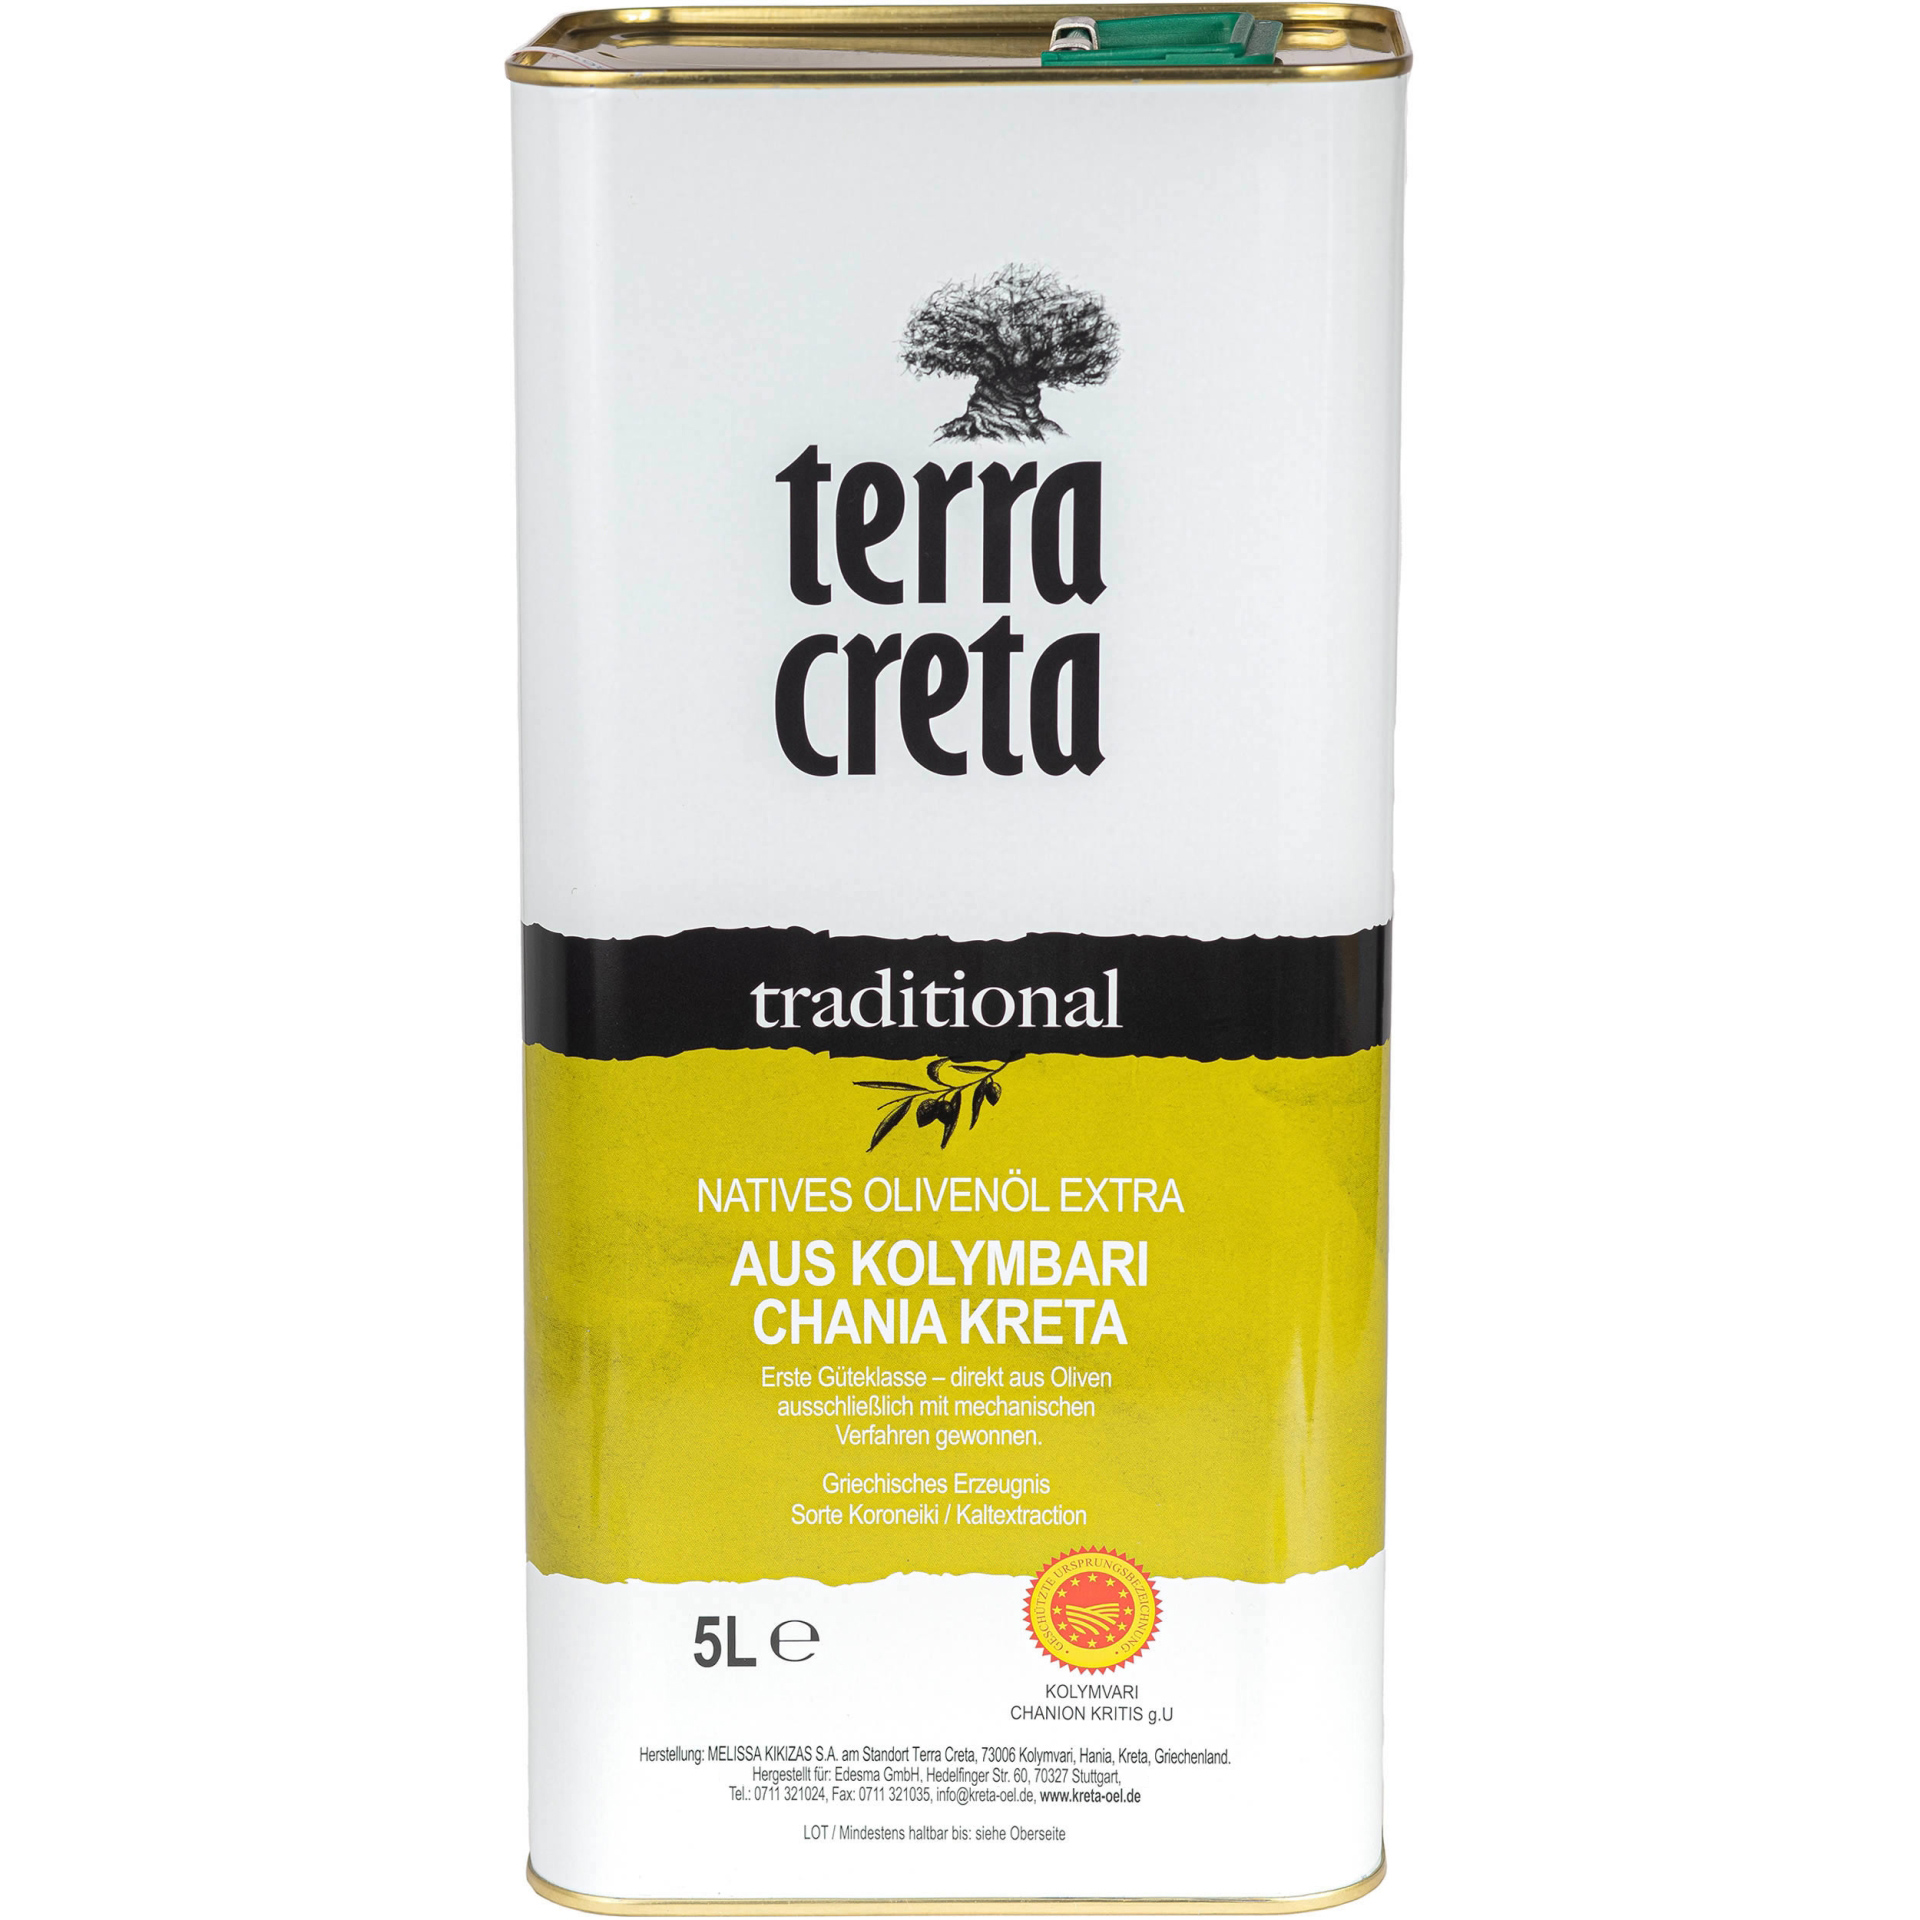 Terra Creta - Extra natives Olivenöl "traditional" g.U. 5 l